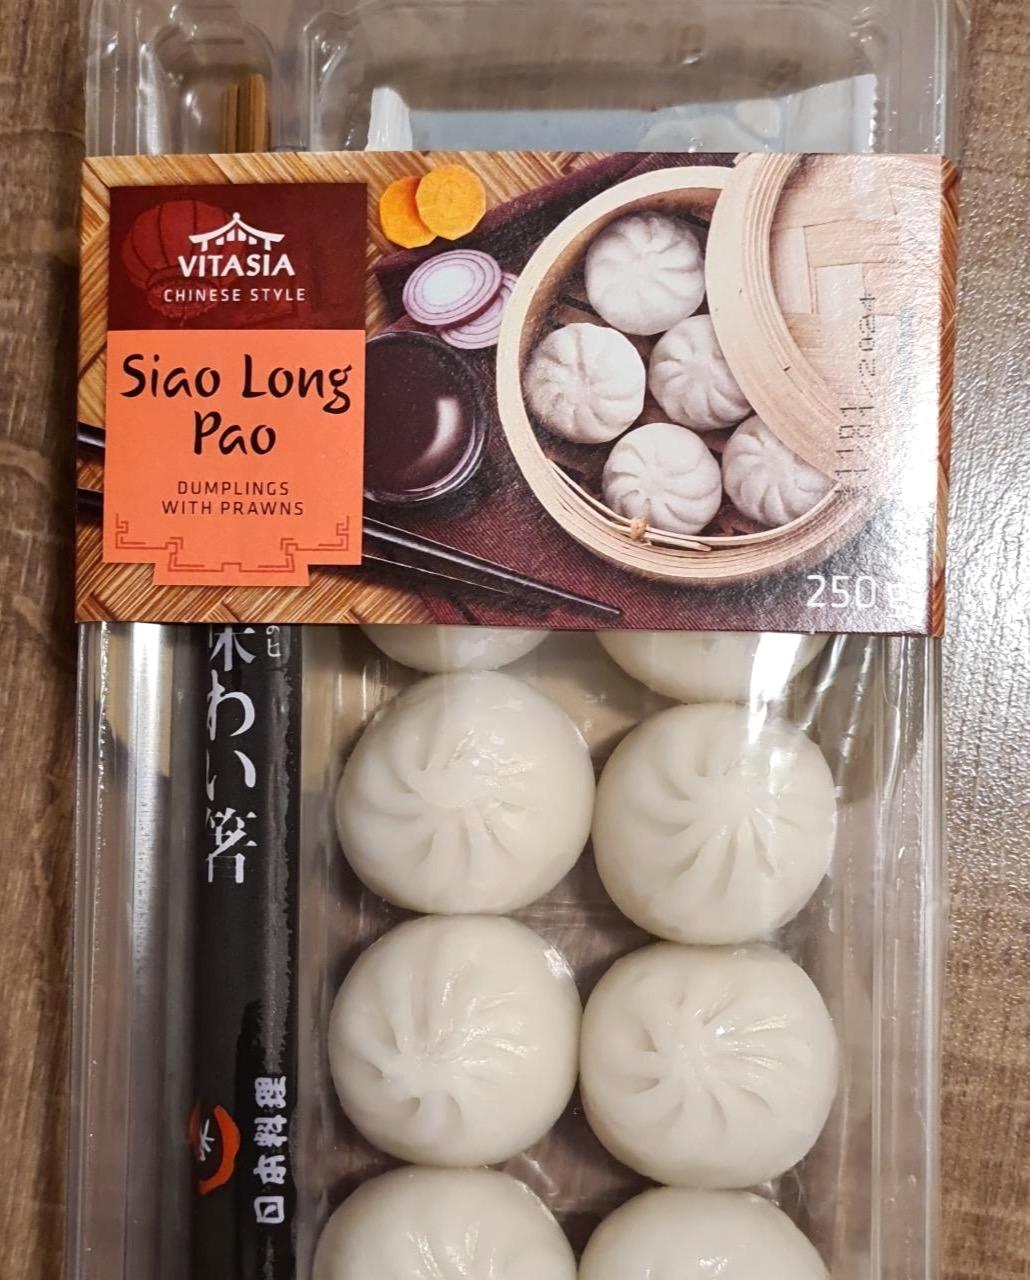 Képek - Siao Long Pao - garnélarákkal, zöldségekkel és sertéshússal töltött tészta Vitasia